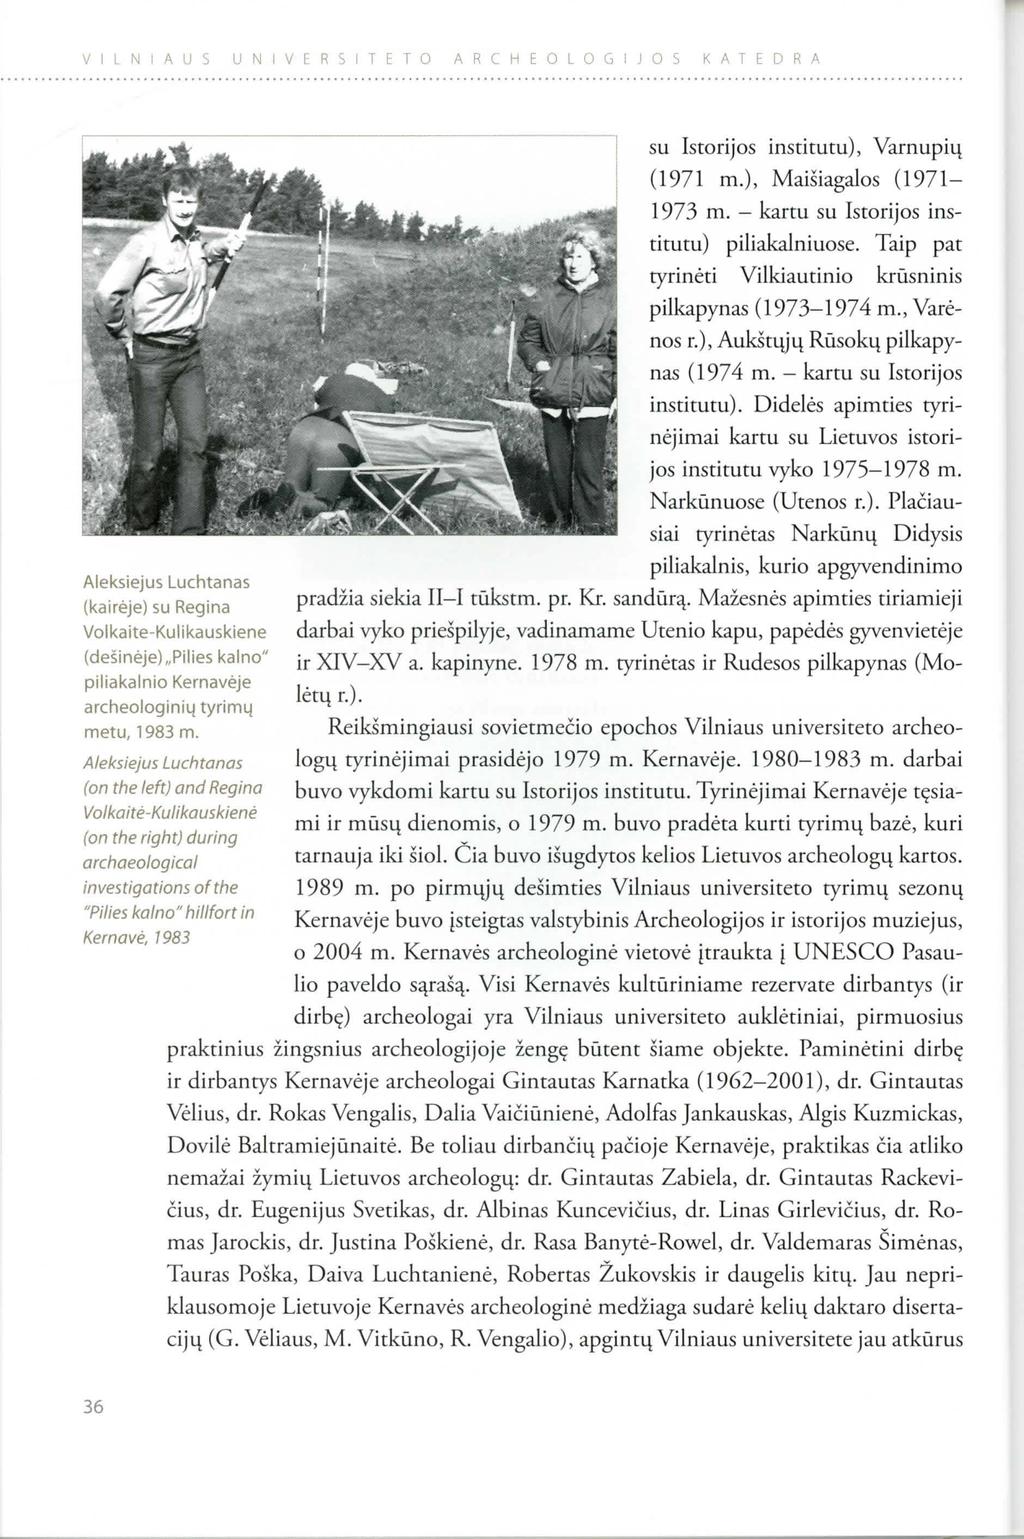 VILNIAUS UNIVERSITETO ARCHEOLOGIJOS KATEDRA Aleksiejus Luchtanas (kaireje) su Regina Volkaite-Kulikauskiene (desineje), Pilies kalno" piliakalnio Kernaveje archeologini4 tyrim4 metu, 1 983 m.